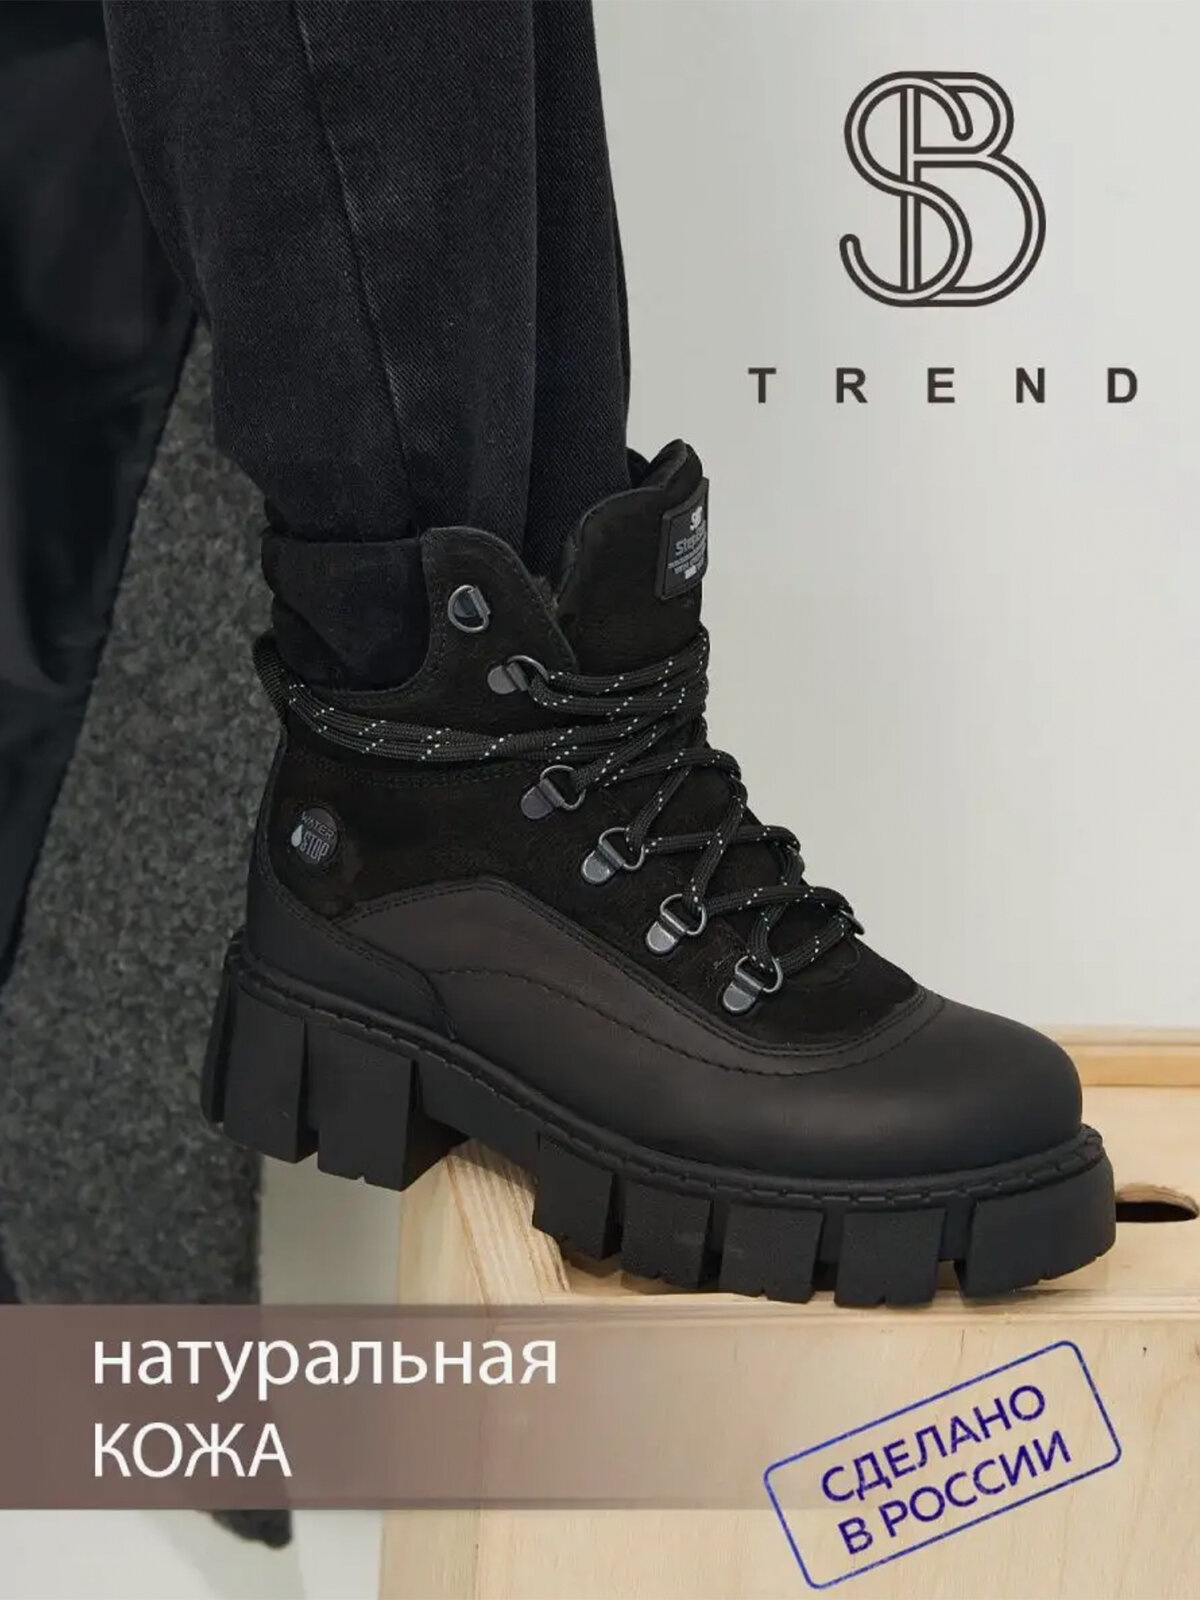 Ботинки берцы Step Borg Ботинки зимние на шнурках с молнией SB TREND, натуральная кожа, нубук